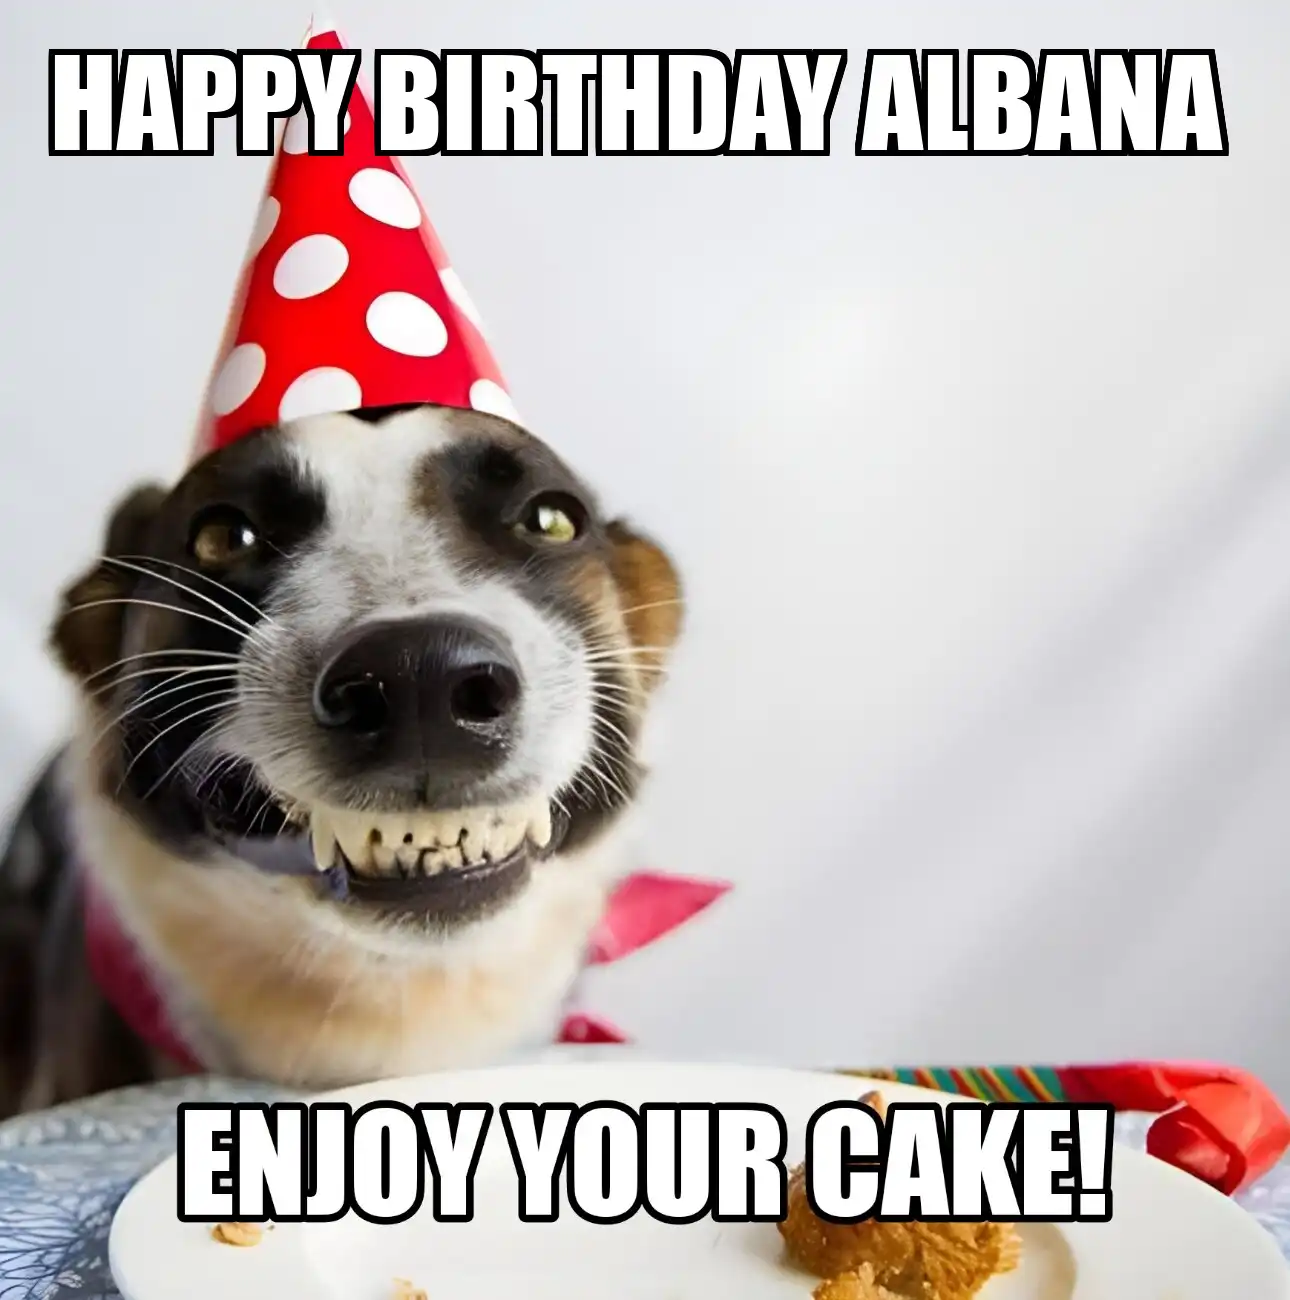 Happy Birthday Albana Enjoy Your Cake Dog Meme